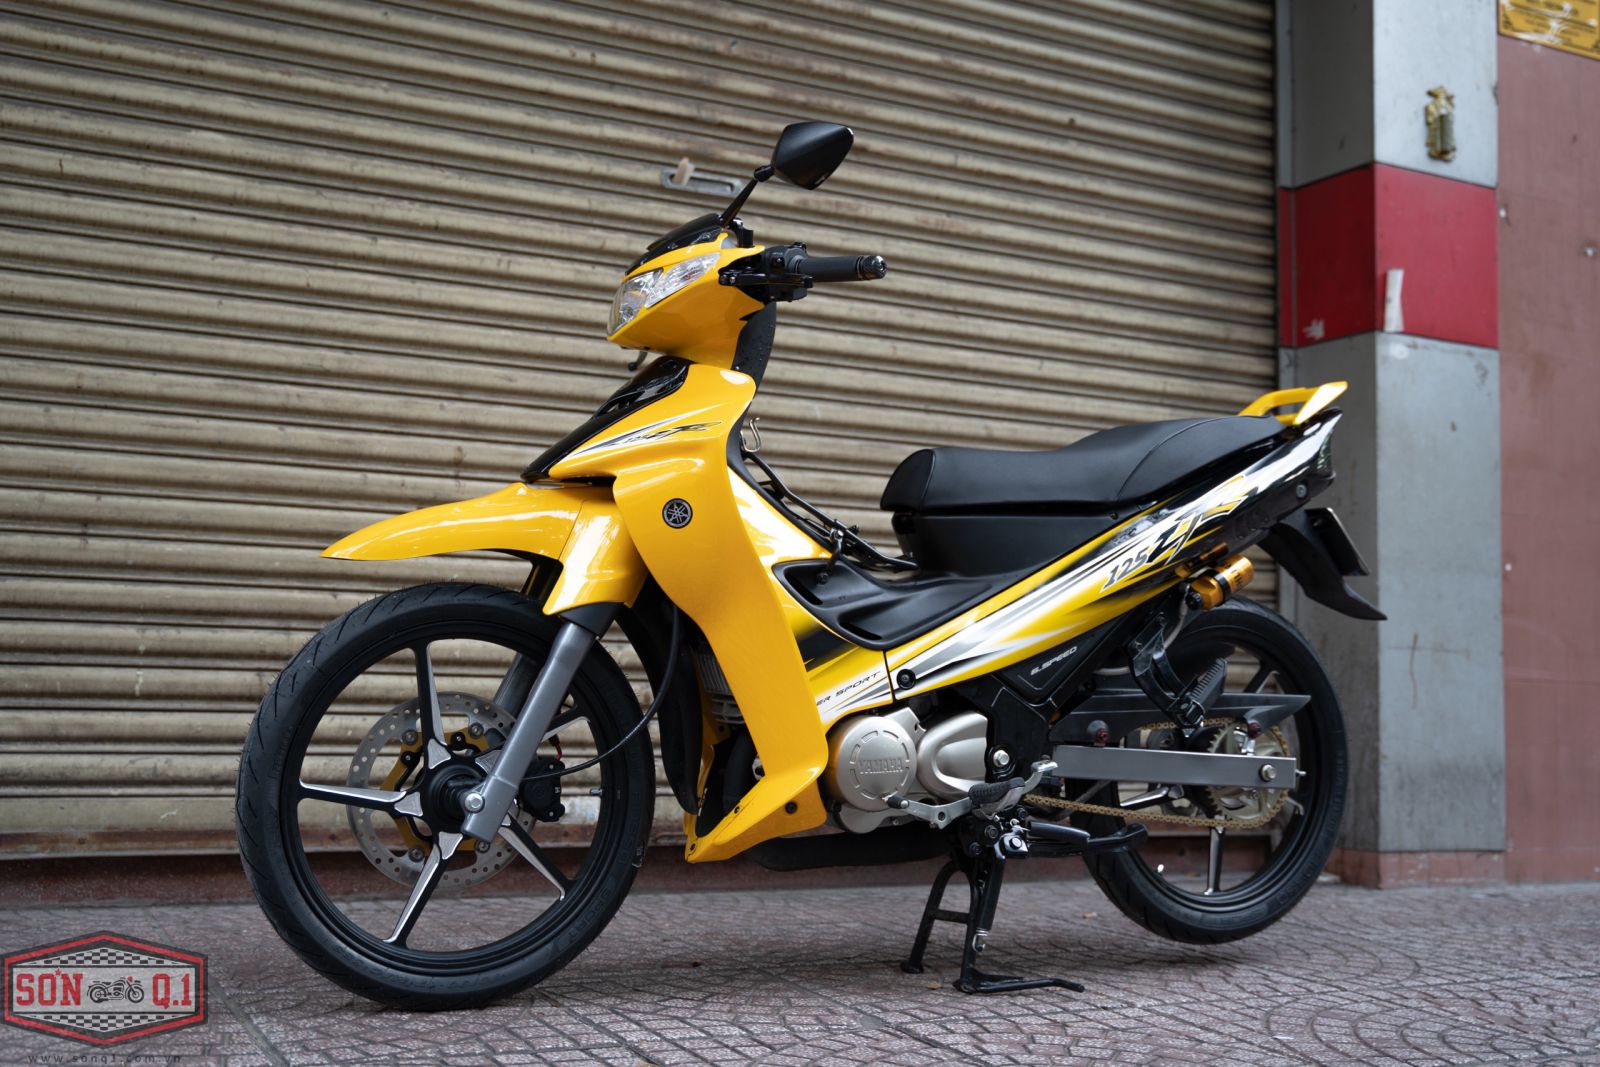 Yamaha YAZ Malaysia số khung số máy zin    Giá 68 triệu  0902999200   Xe Hơi Việt  Chợ Mua Bán Xe Ô Tô Xe Máy Xe Tải Xe Khách Online